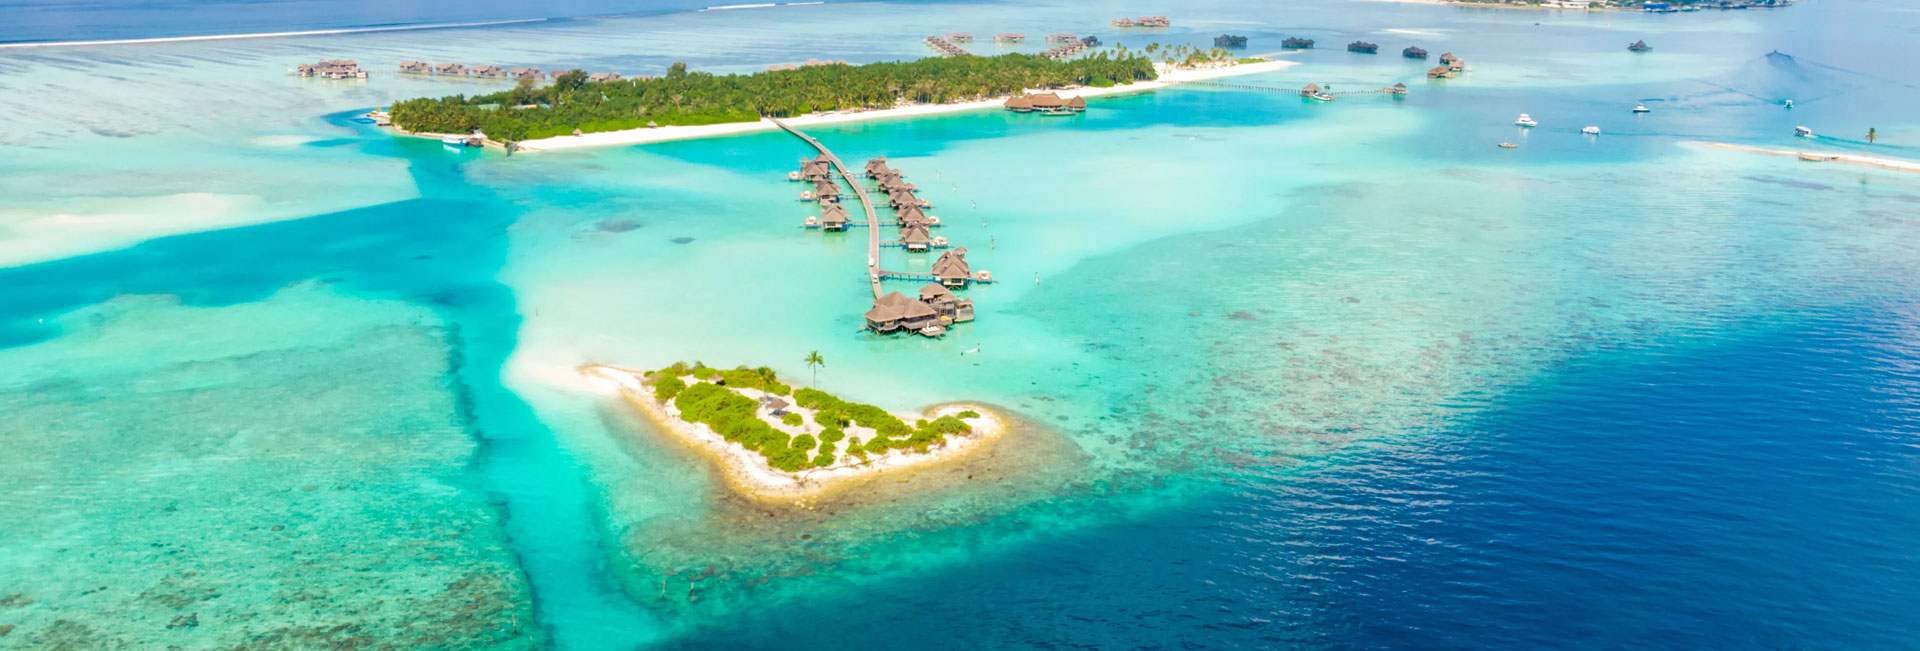 Islas maldivas